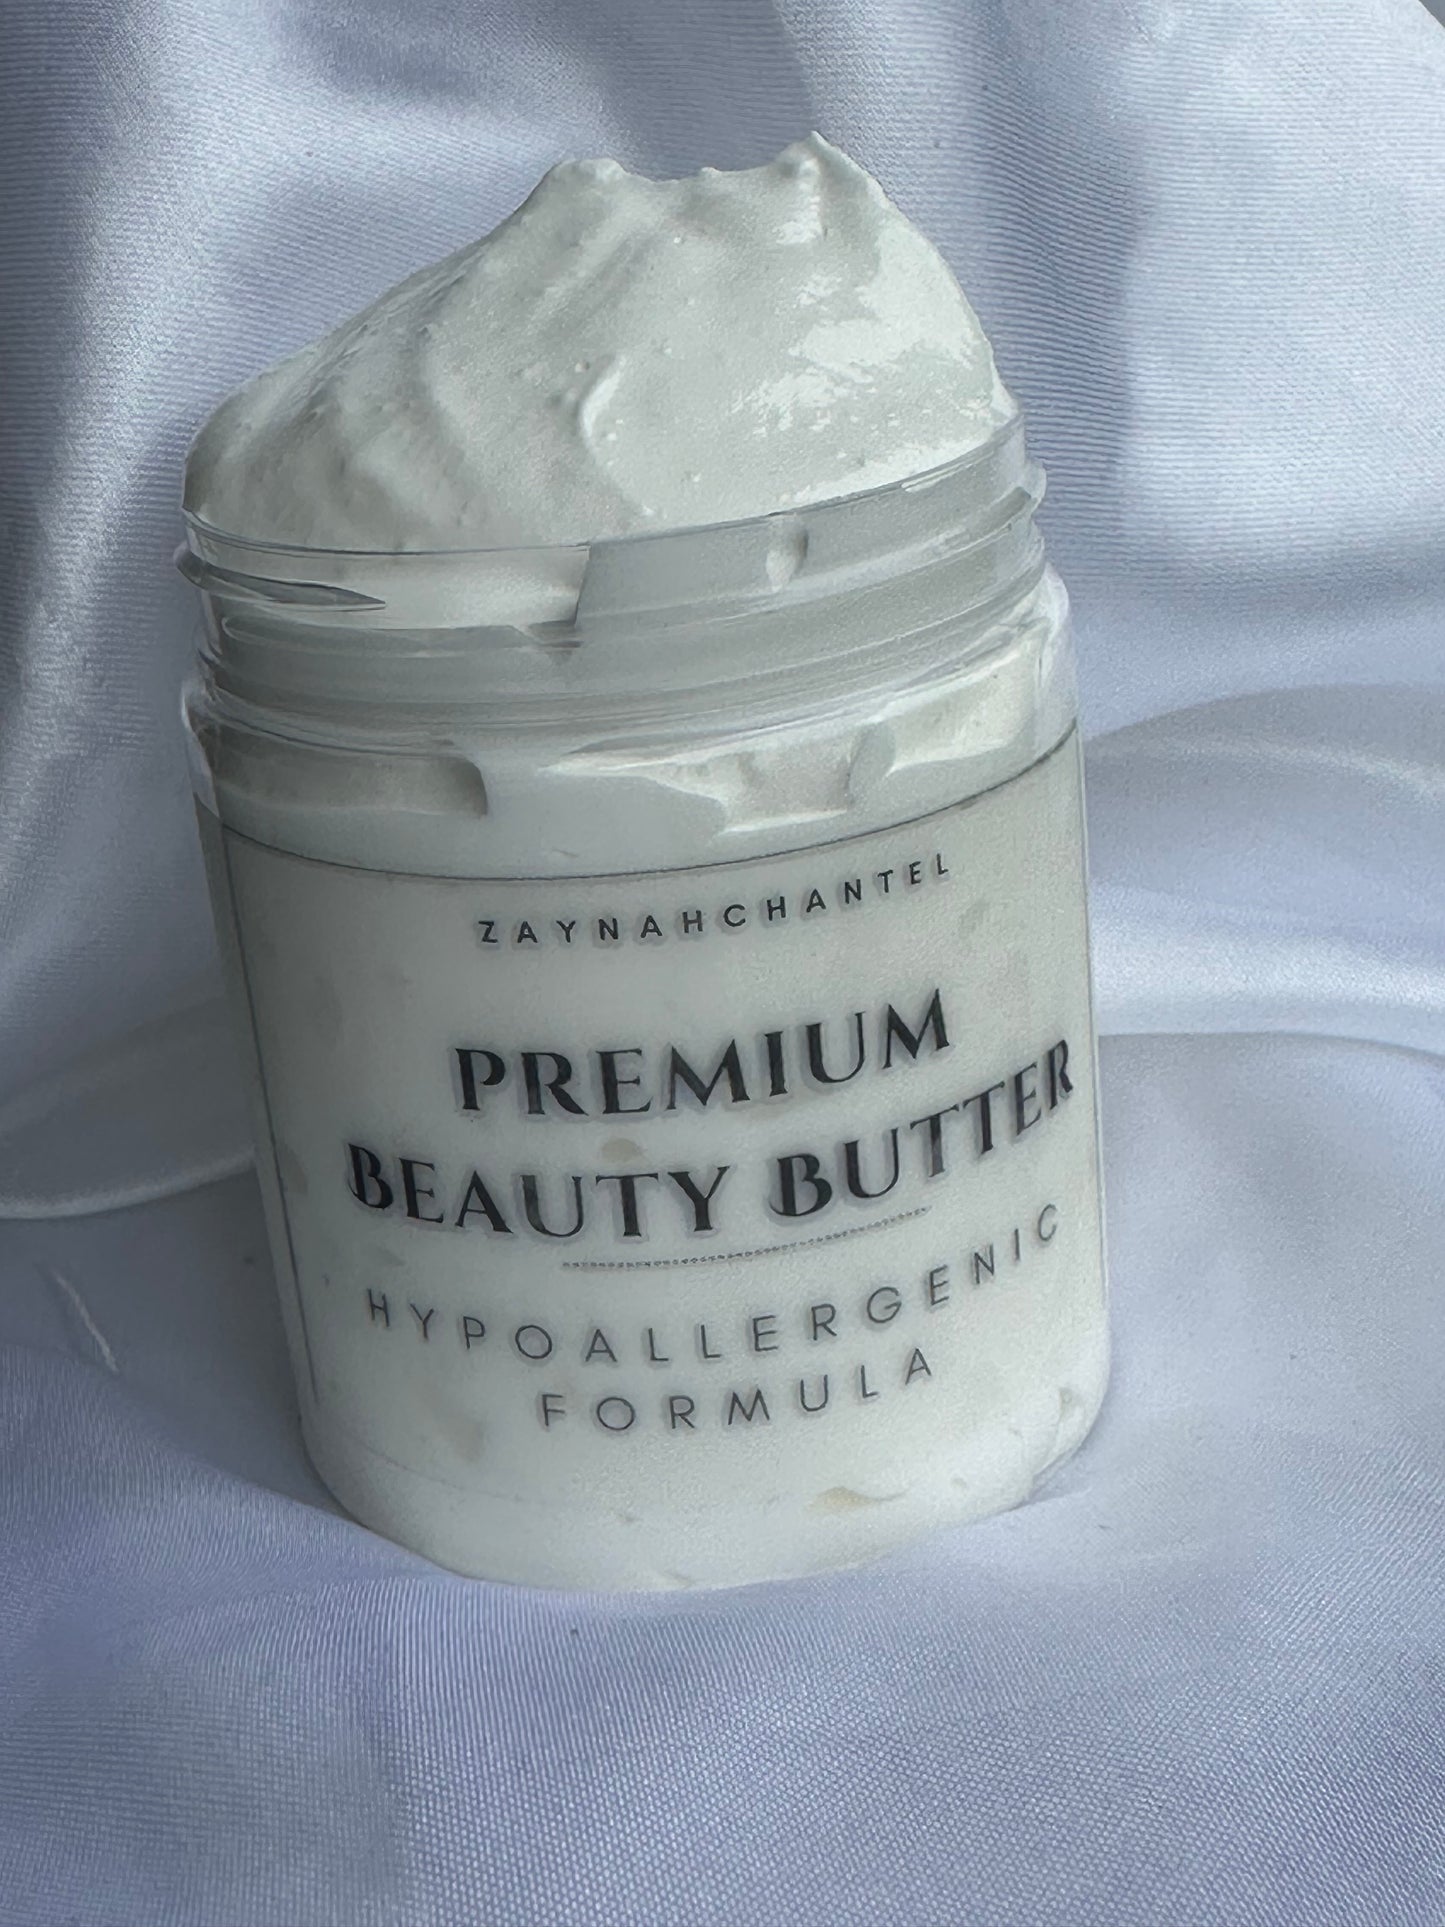 Premium Beauty Butter